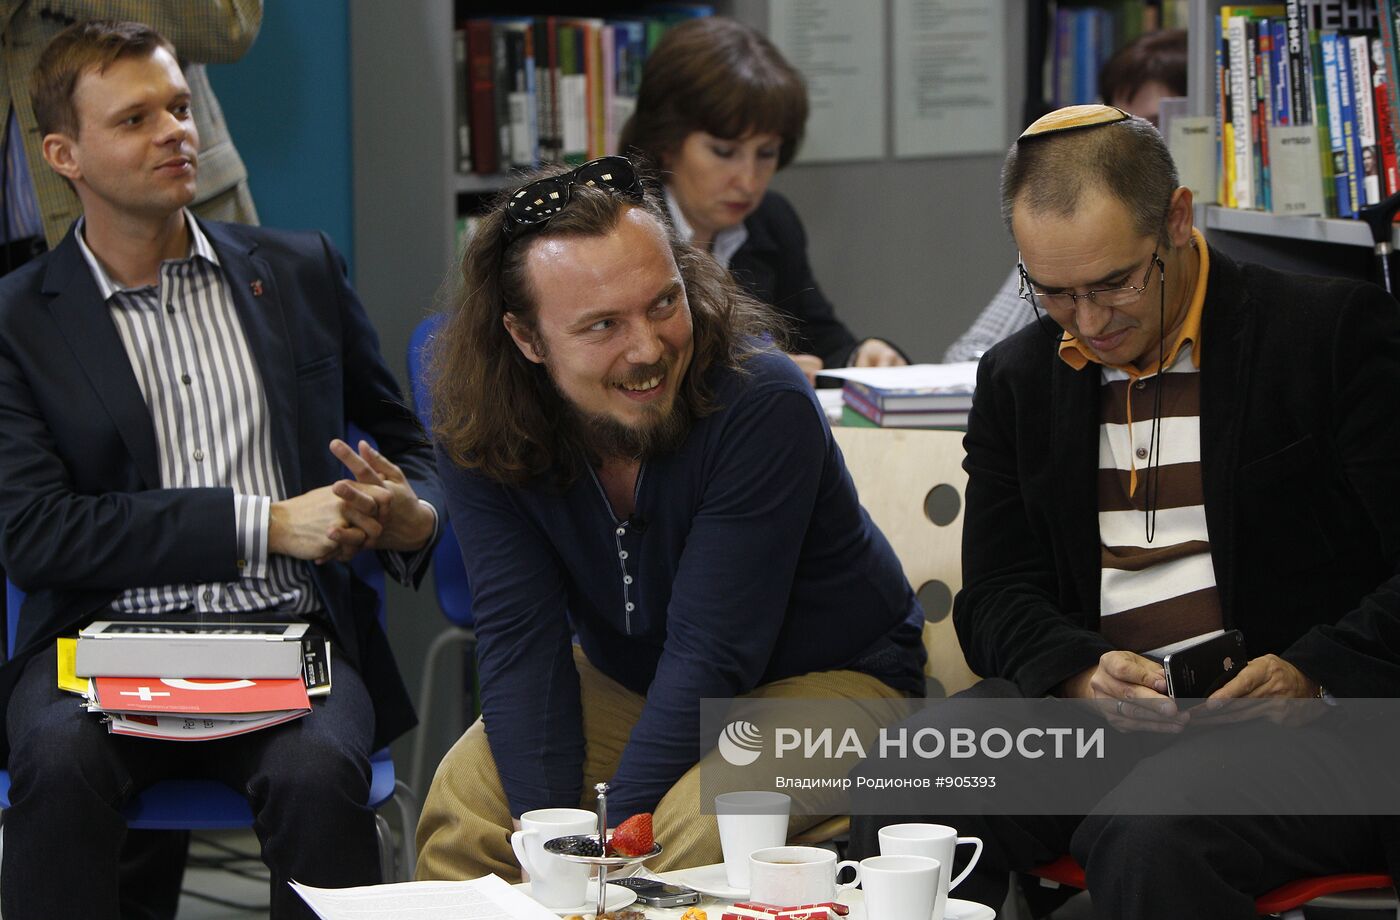 Представители интернет-сообществ на встрече с президентом РФ